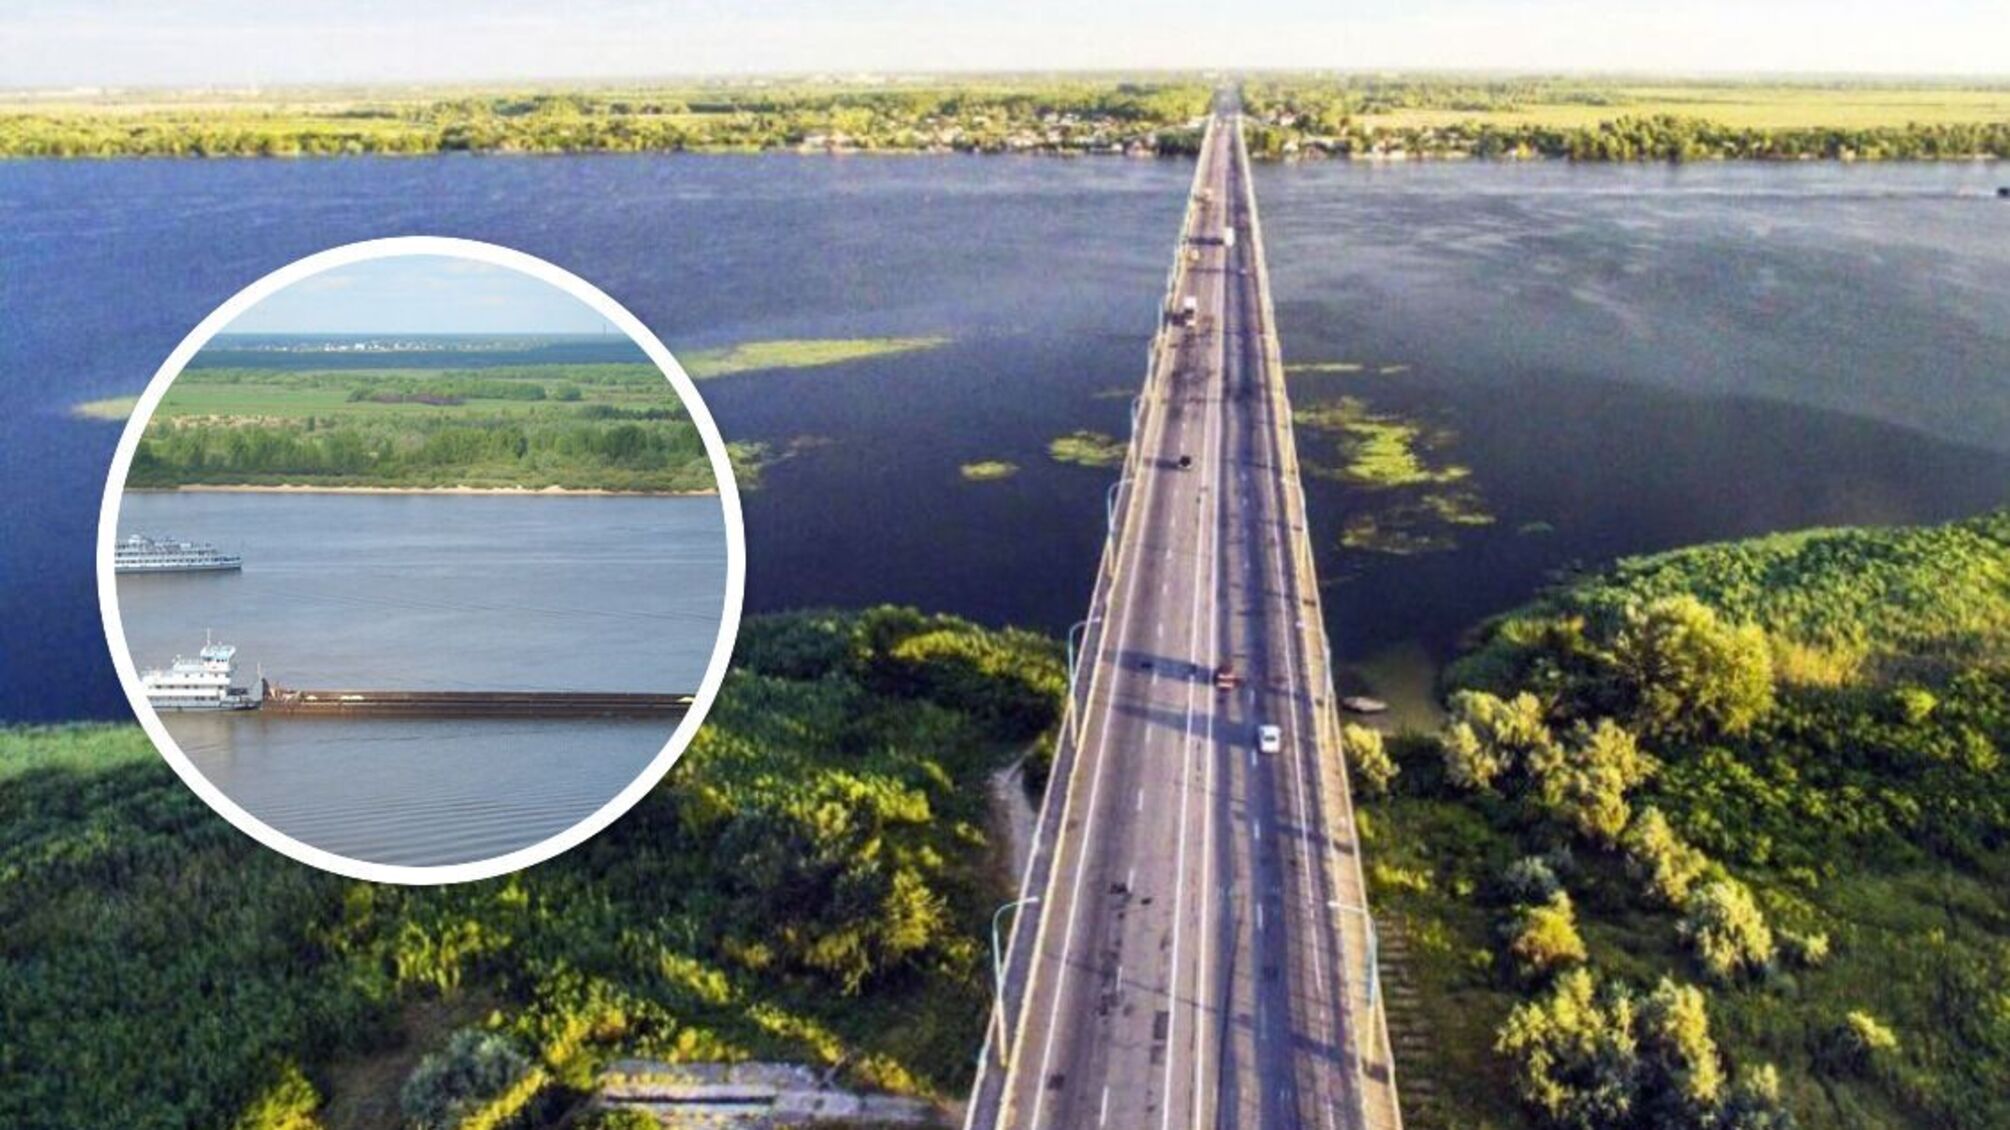 Появились спутниковые снимки барж возле Антоновского моста: переправу демонтировали частично